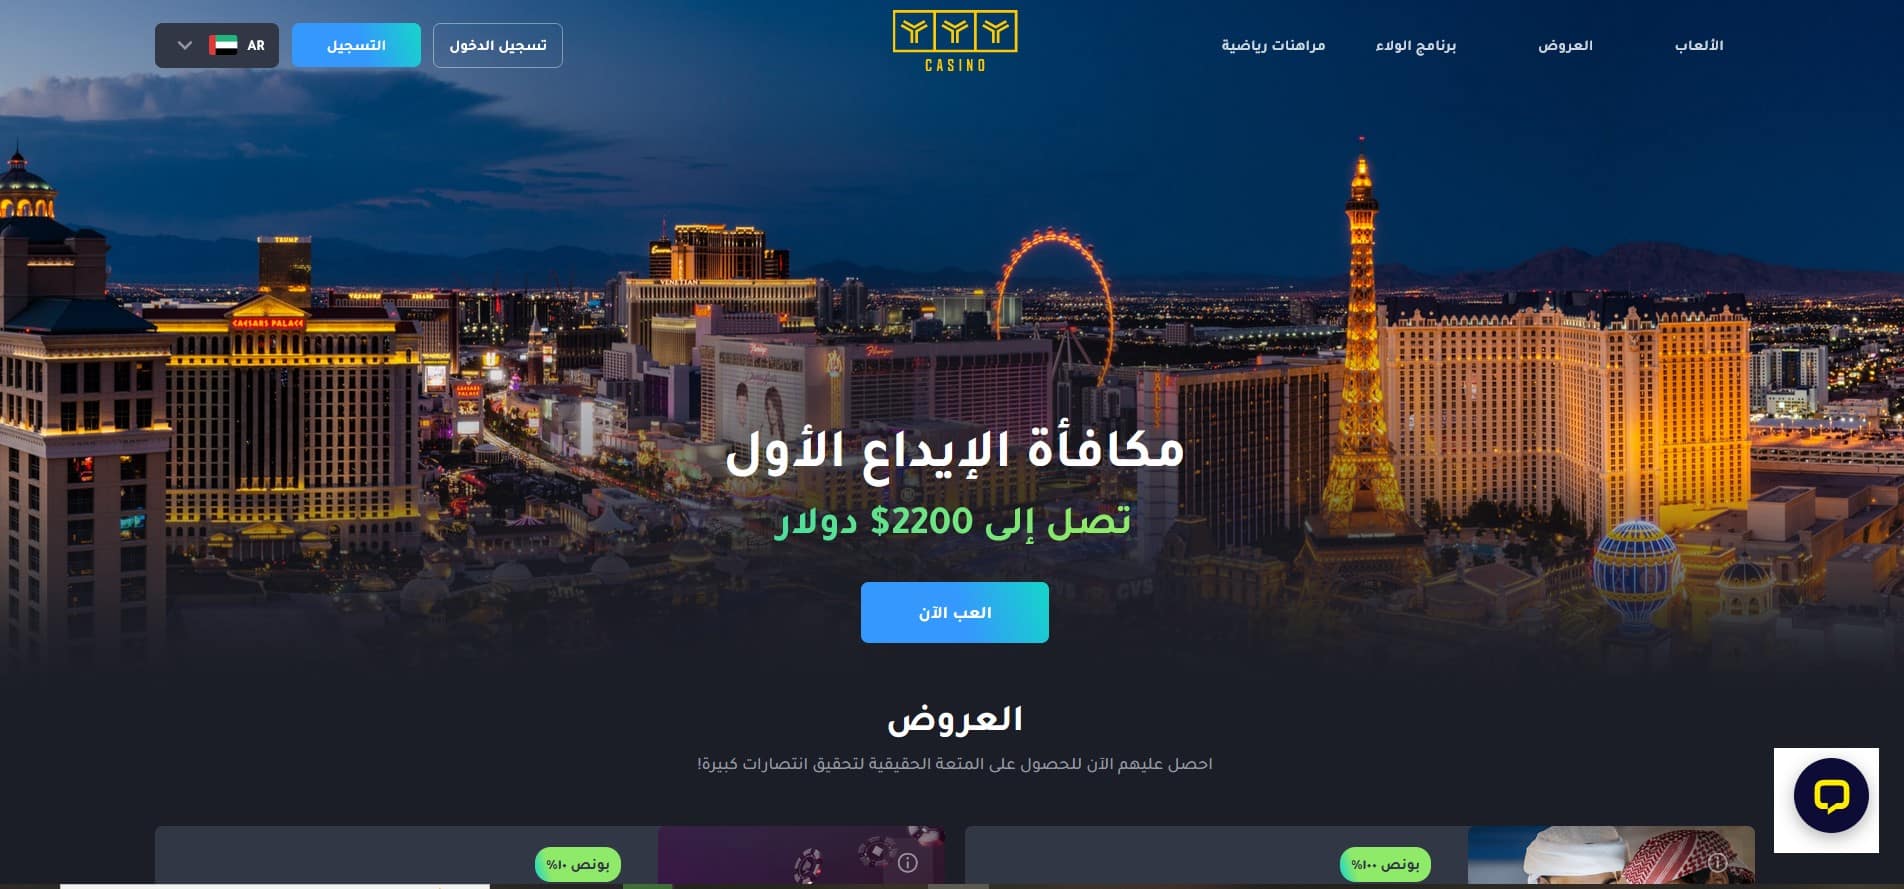 YYY Casino- أفضل مواقع المراهنات الرياضية العربية